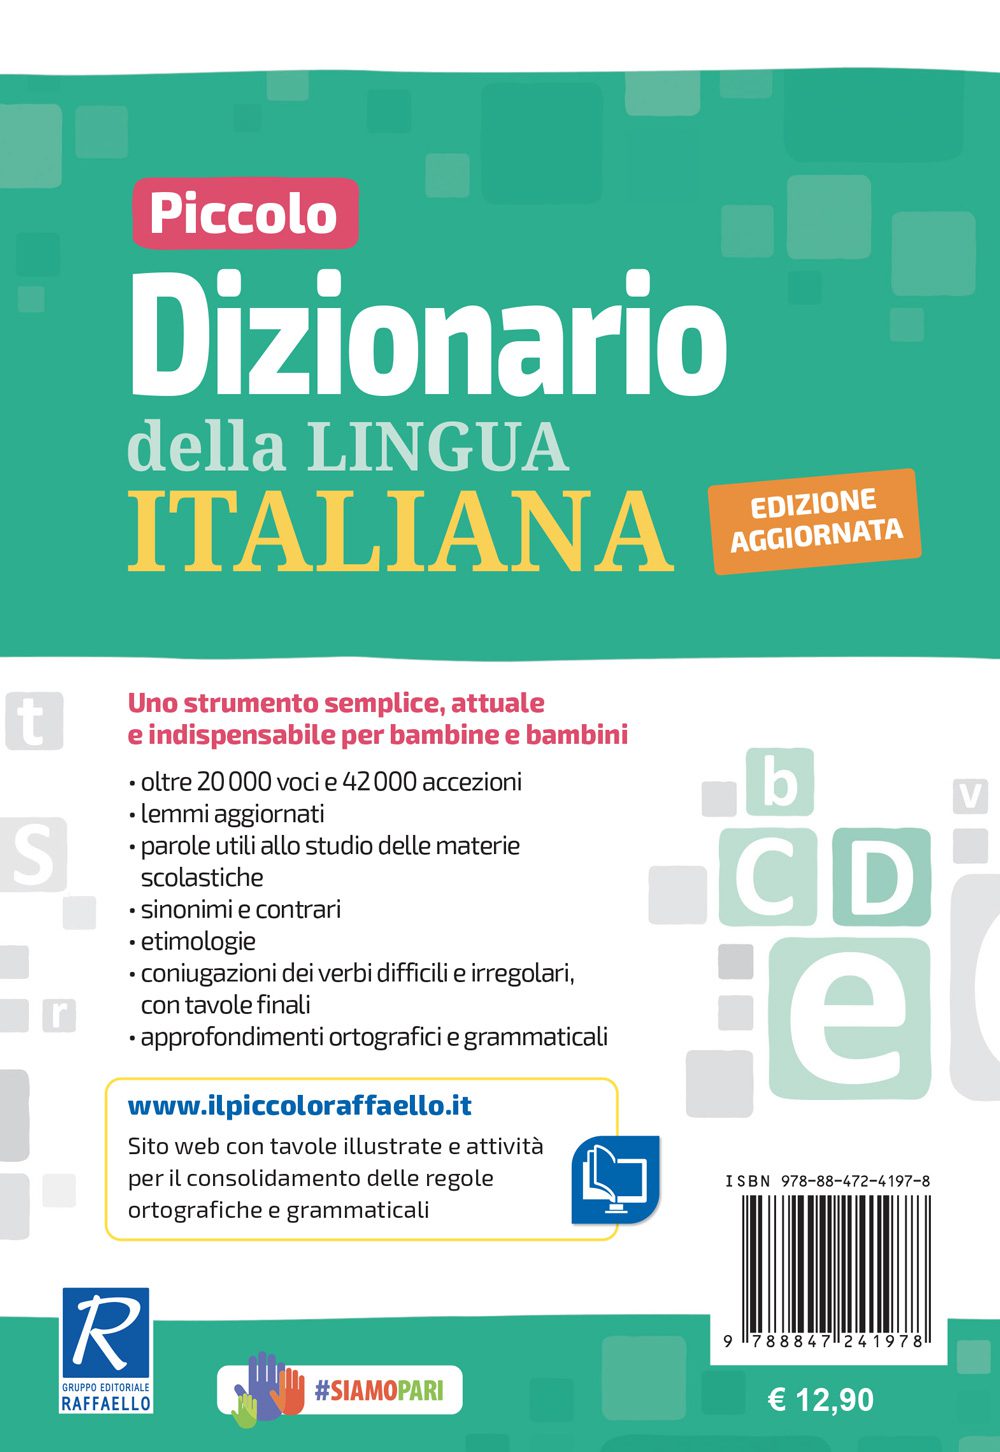 Piccolo dizionario della lingua italiana - Edizione aggiornata